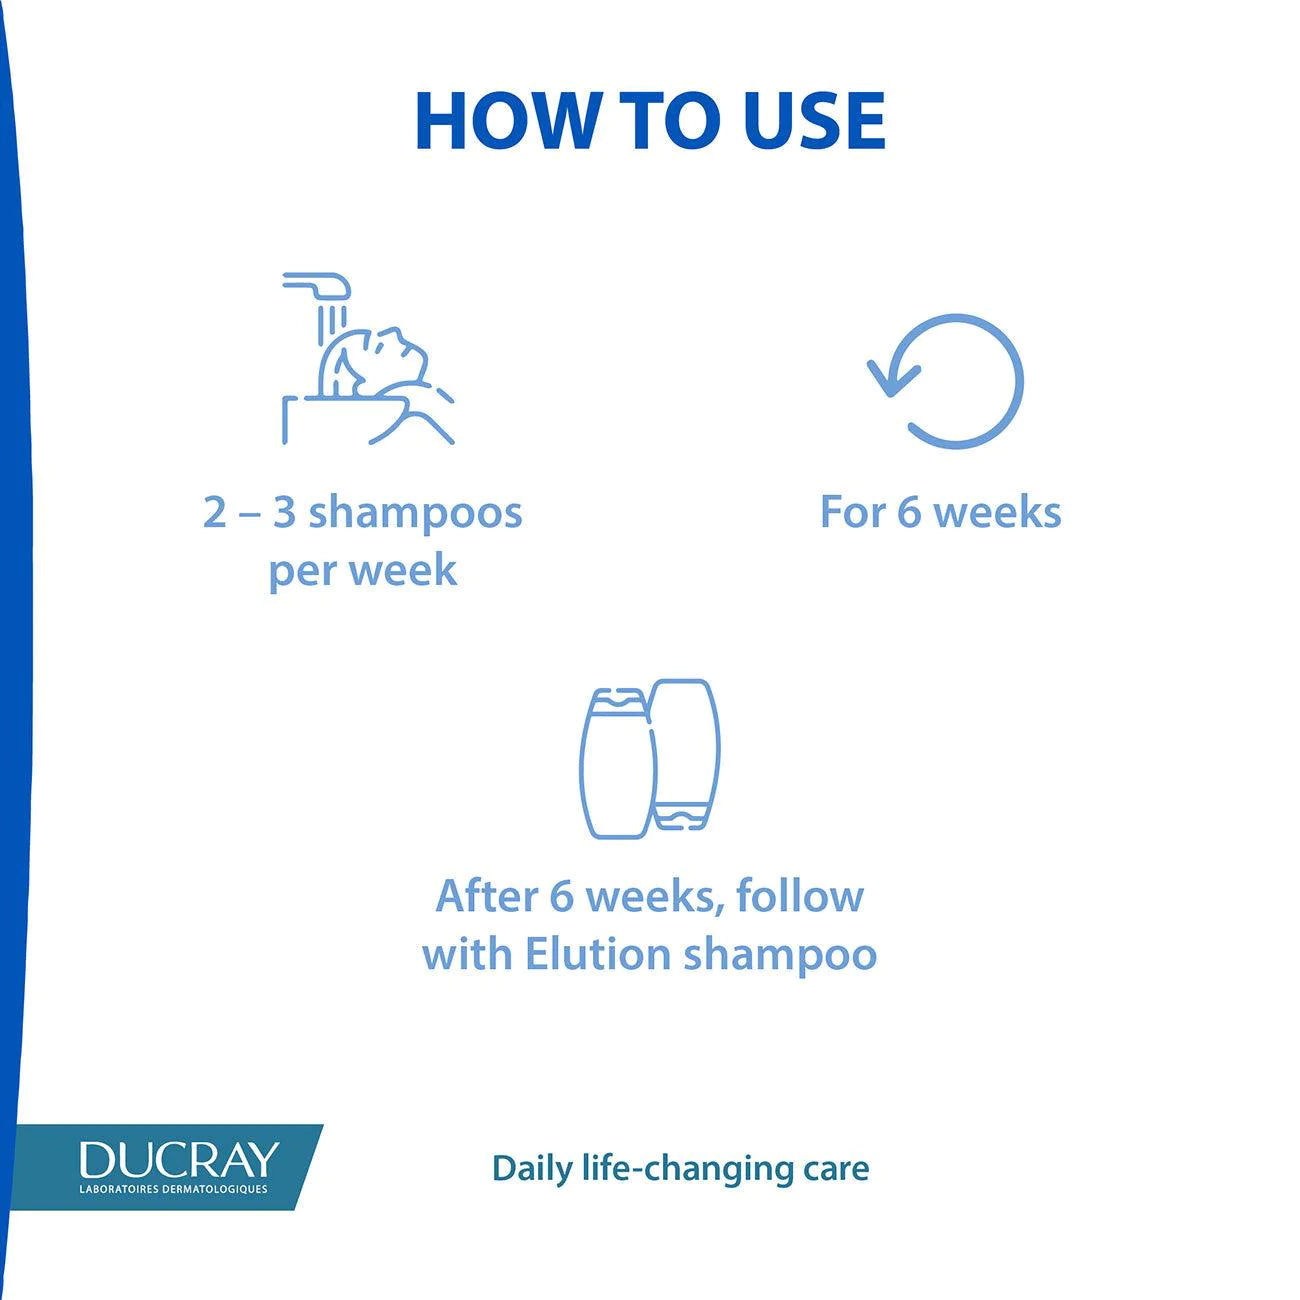 DUCRAY Squanorm Anti-Dandruff Treatment Shampoo - Oily Dandruff